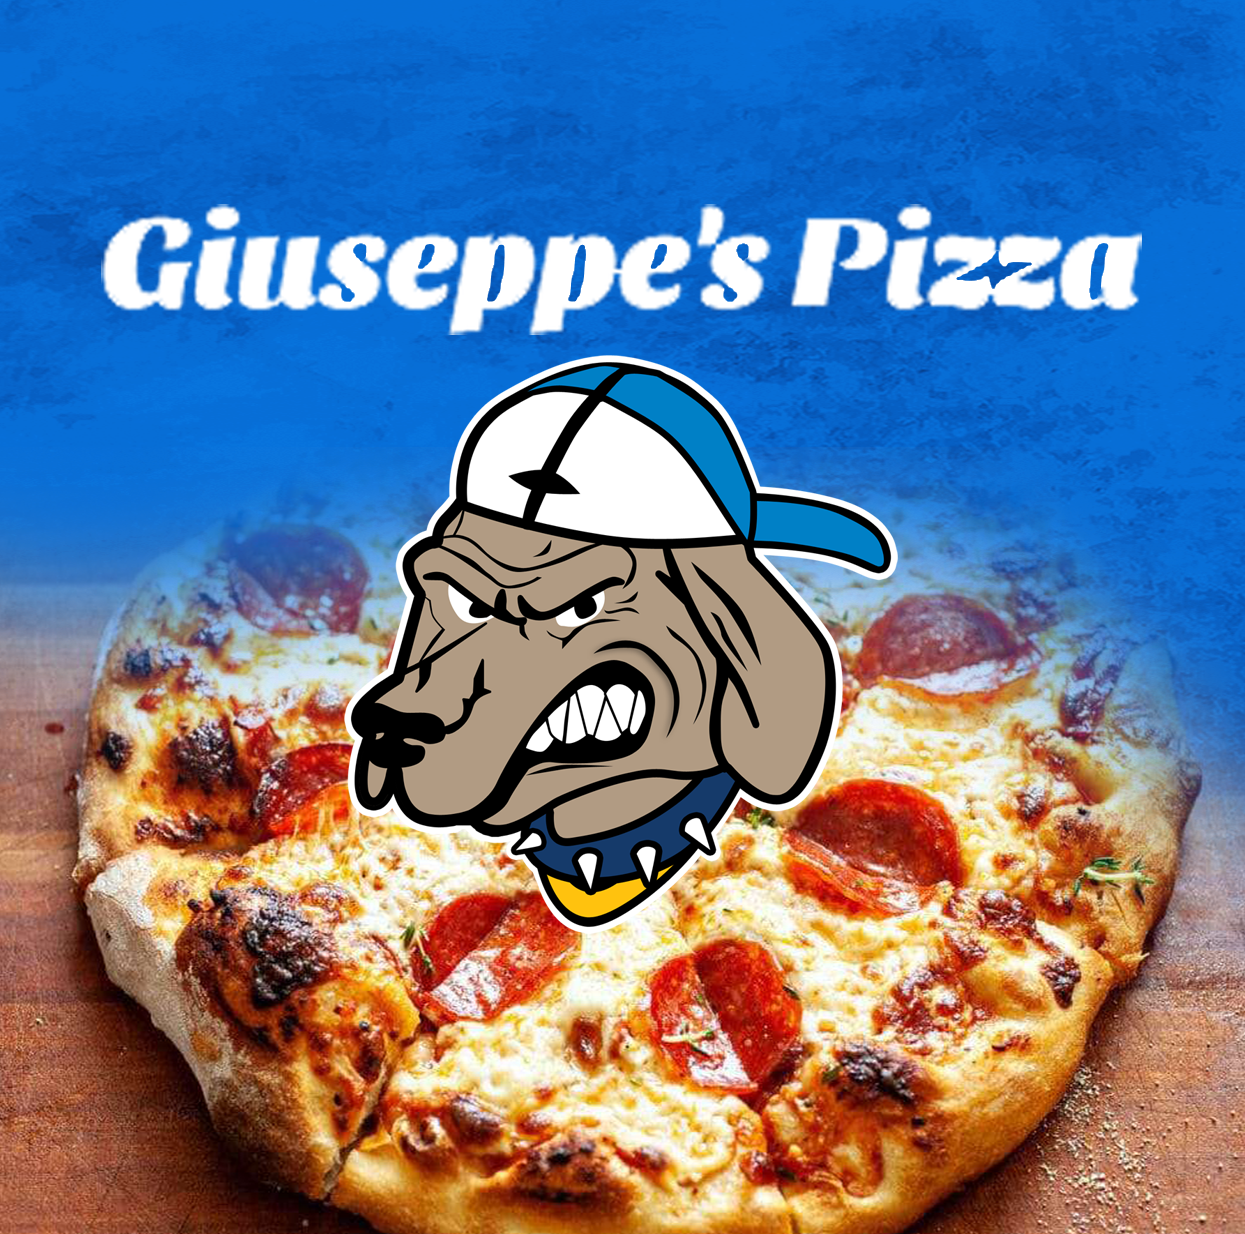 sponsor-giuseppes-pizza